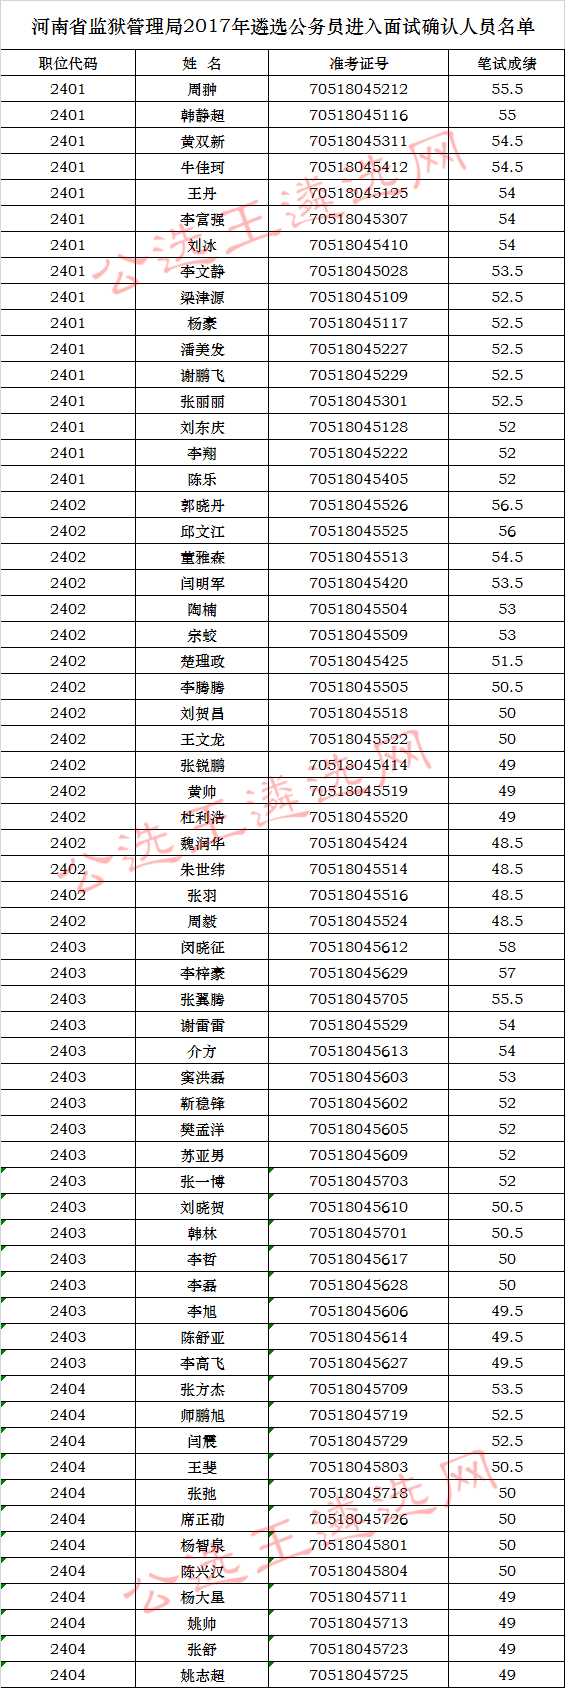 河南省监狱管理局2017年遴选公务员进入面试确认人员名单.jpg